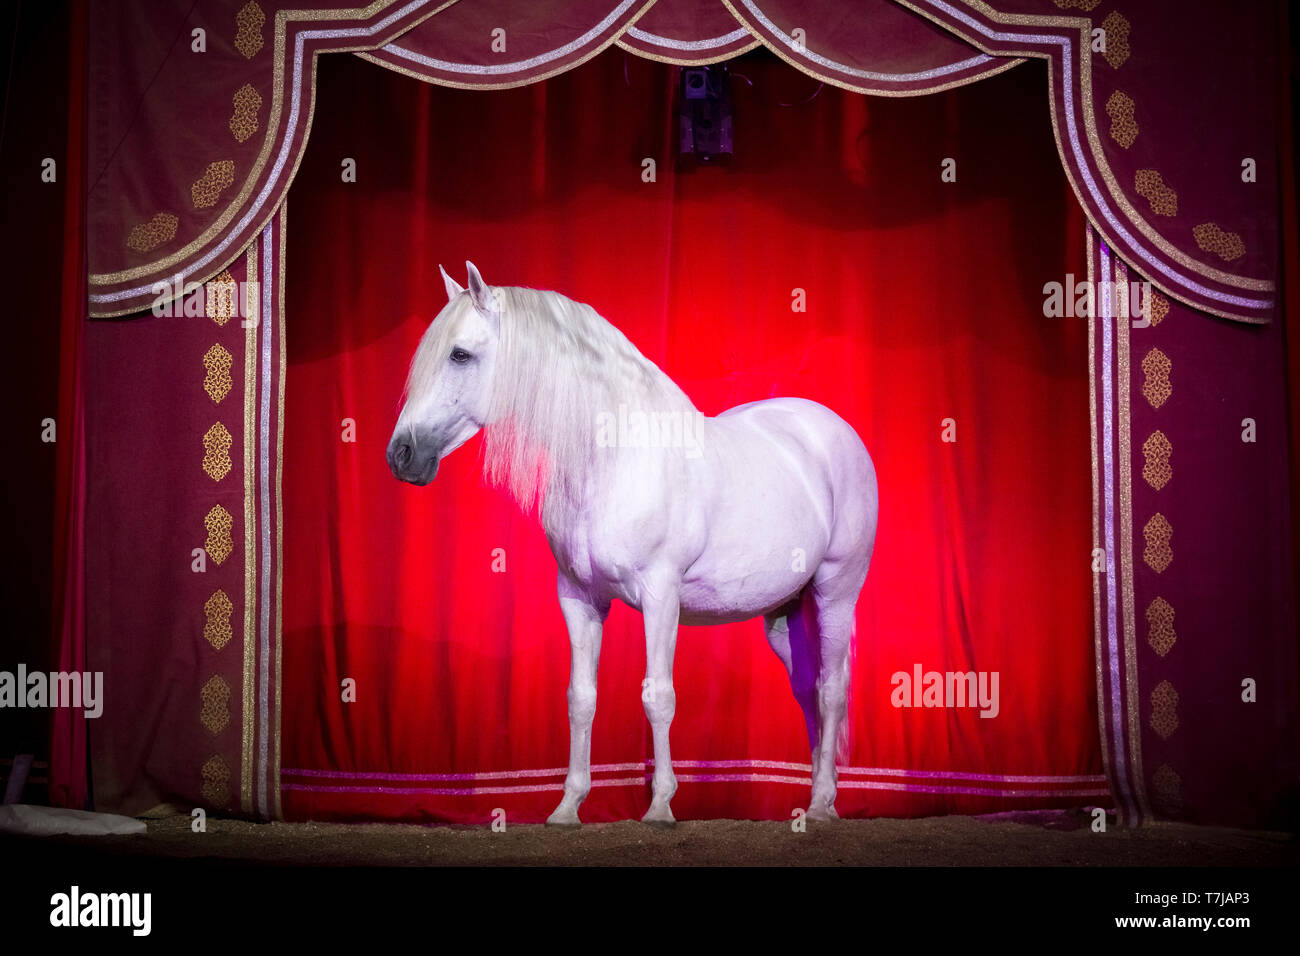 Pura Raza Española, andaluse. Stallone grigio in un circo, in piedi davanti ad un sipario rosso. Austria Foto Stock